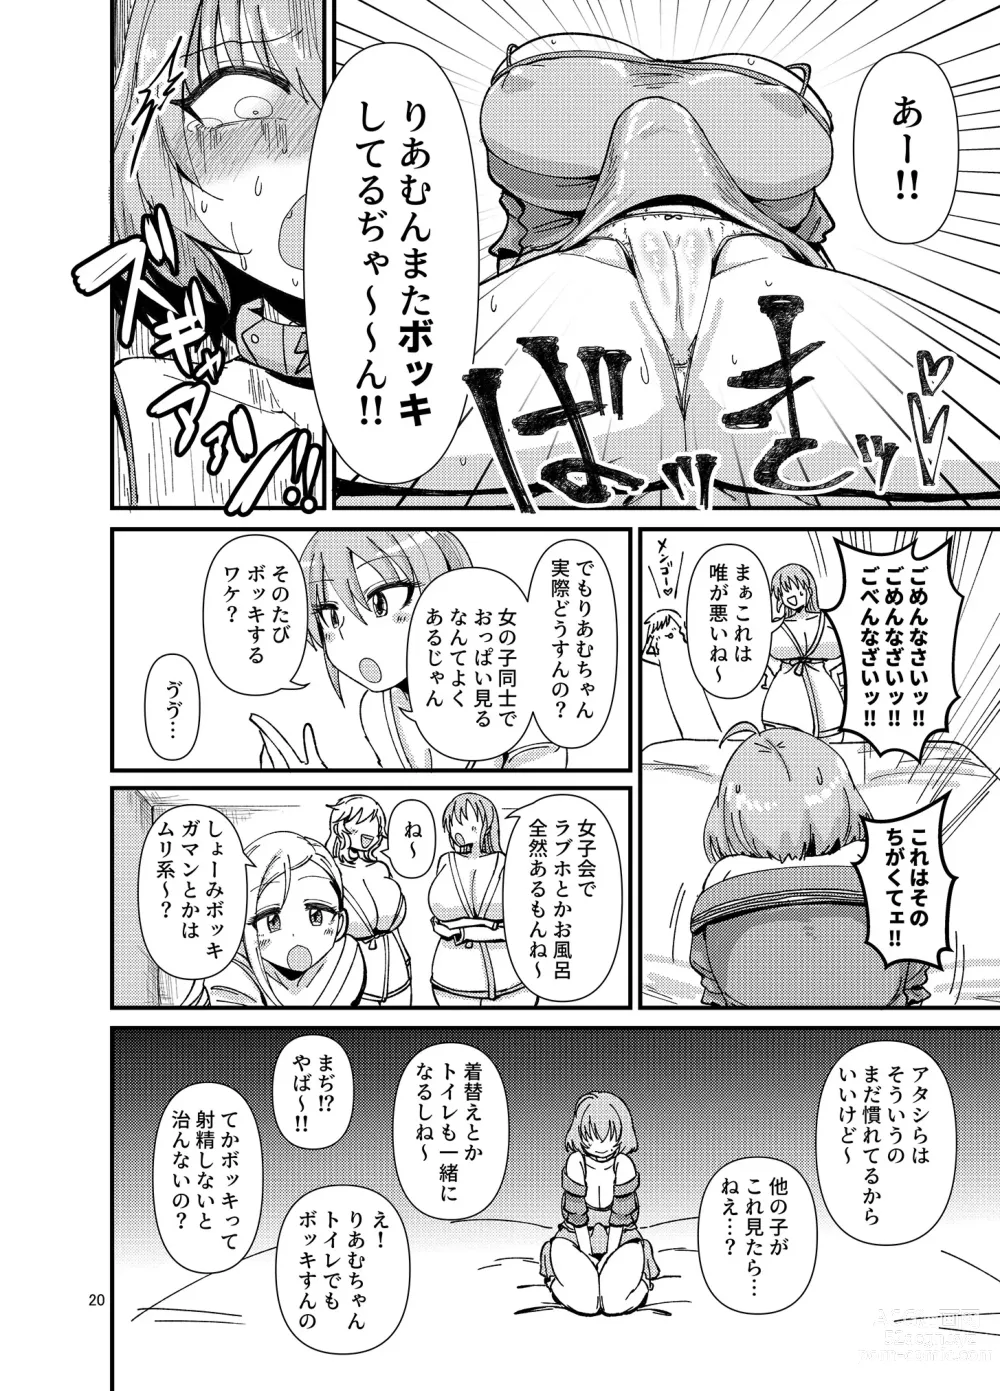 Page 20 of doujinshi Gal shika Tatan!